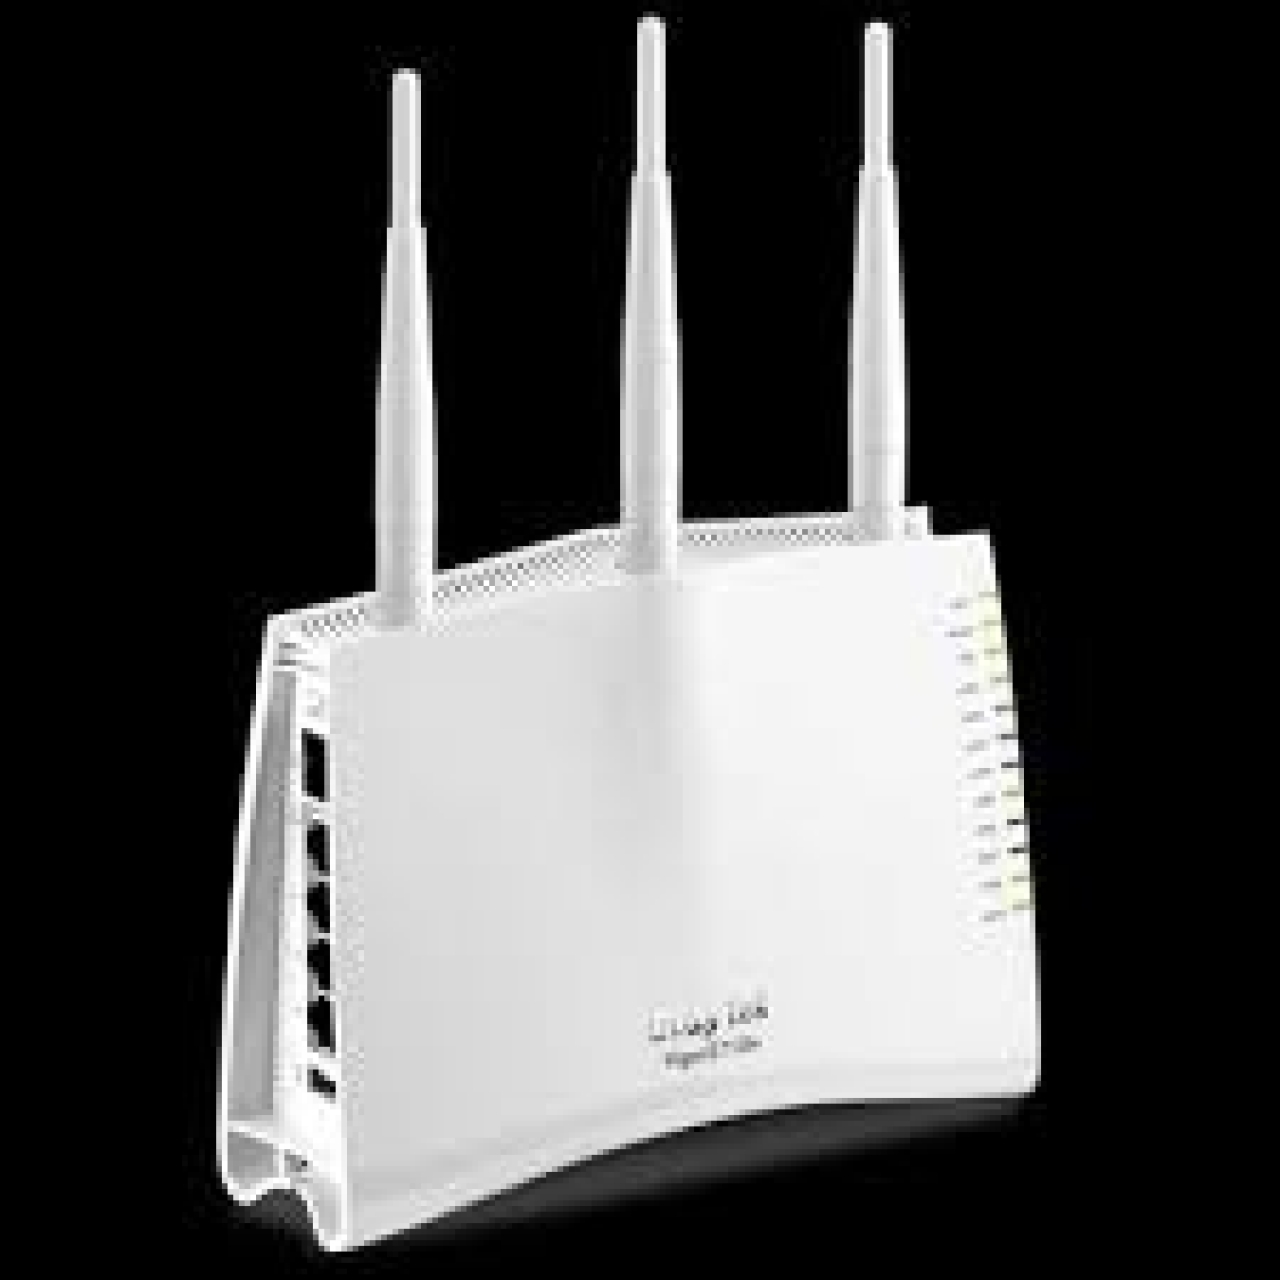 DRAYTEK Vigor 2710n ADSL2+ VPN Wireless Router Modem